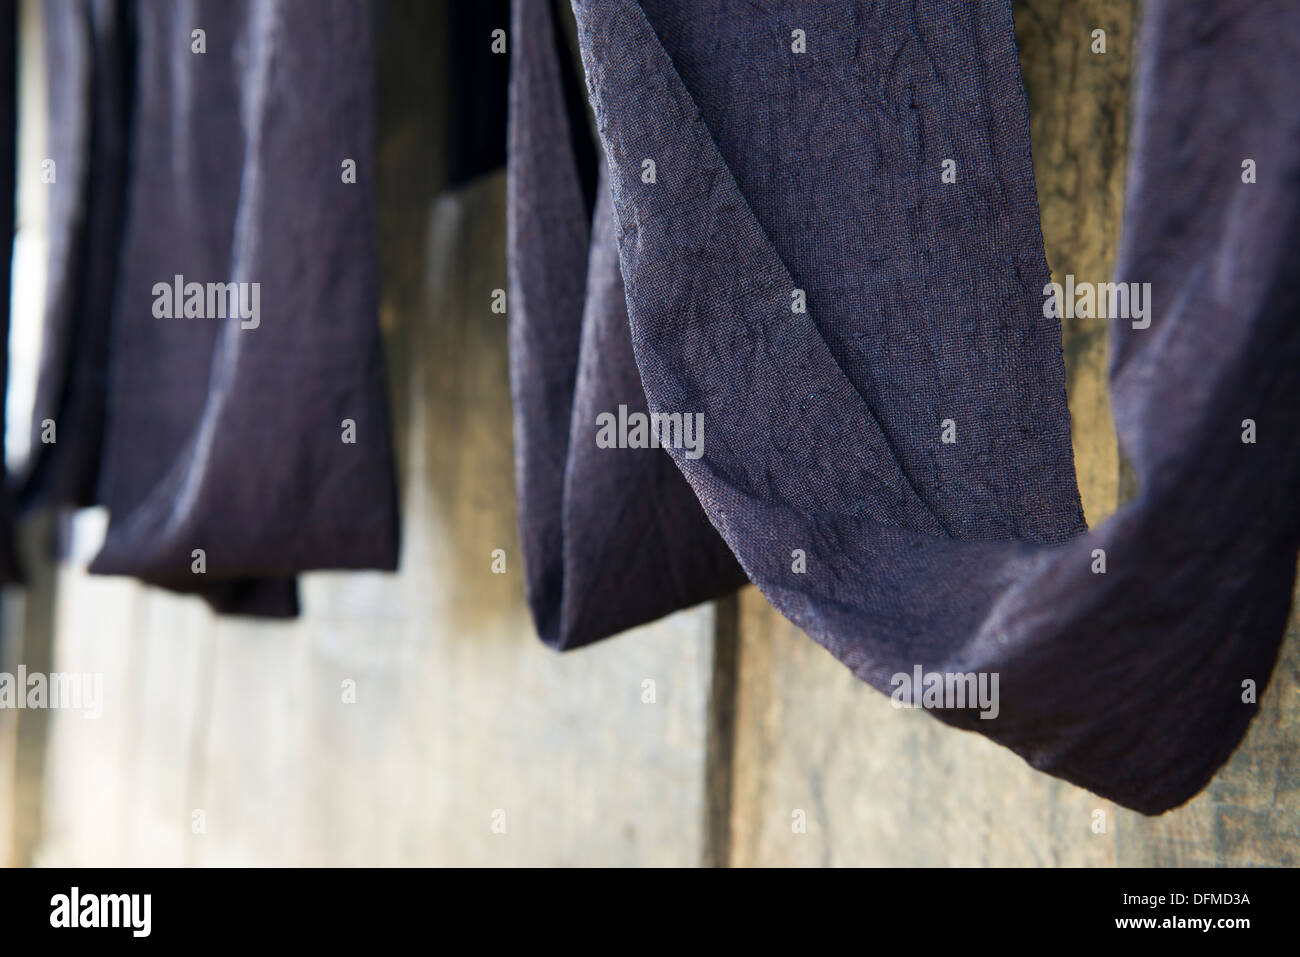 Grupo Minoritario de Hmong negro hecha a mano ropa de cáñamo, Sa Pa, Vietnam Foto de stock